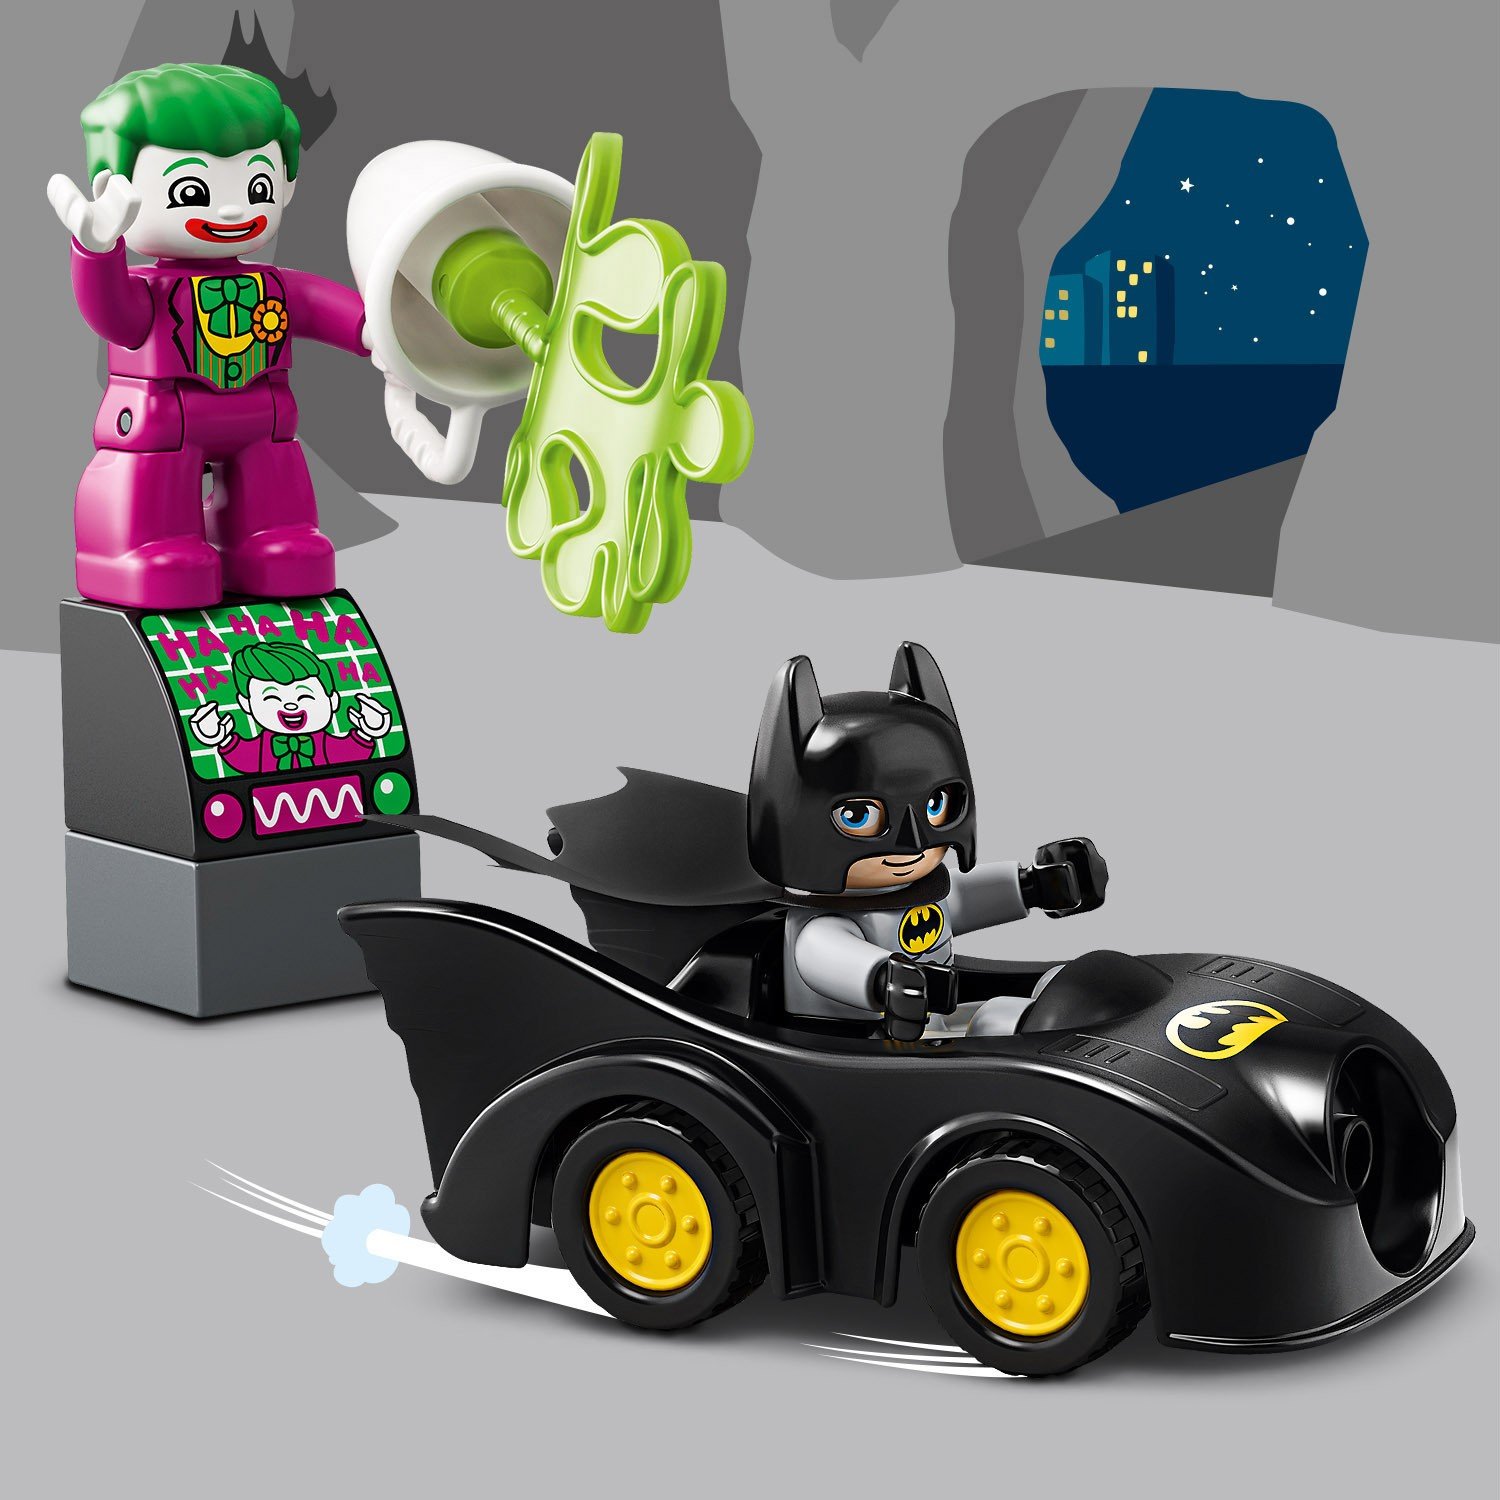 Конструктор LEGO Duplo DC Comics «Бэтпещера» 10919 / 33 детали